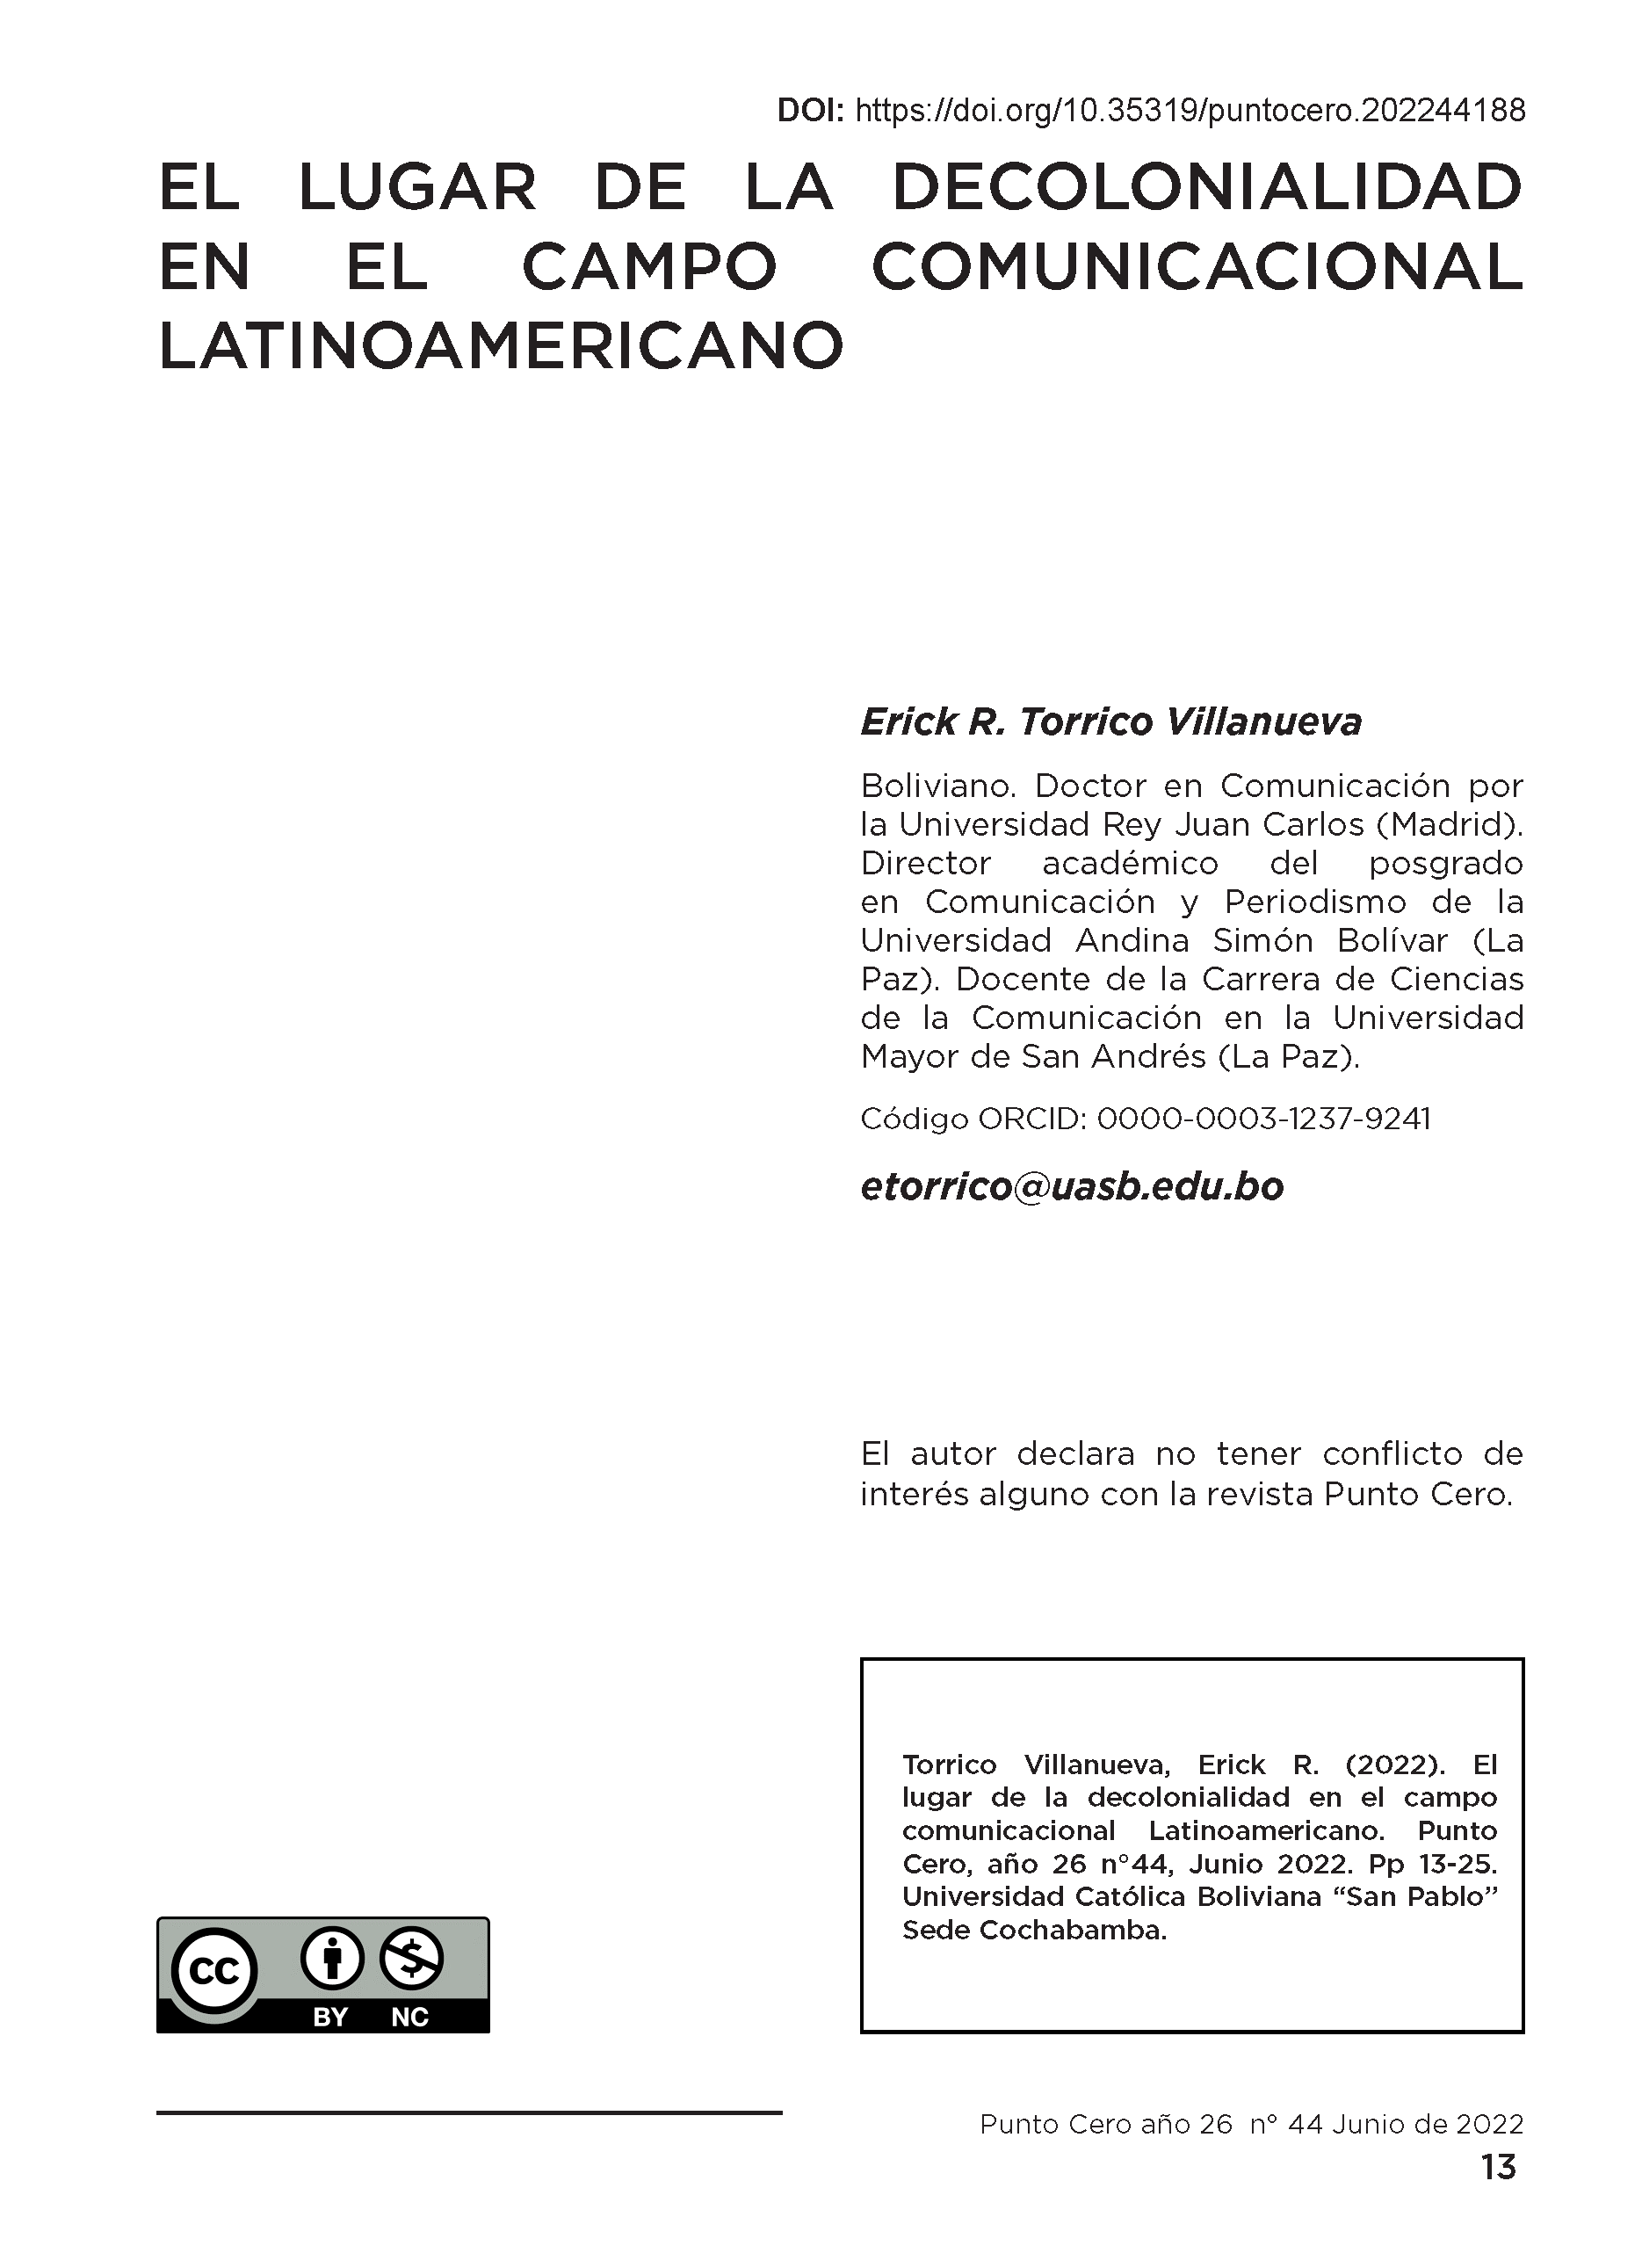 El lugar de la Decolonialidad en el campo Comunicacional Latinoamericano